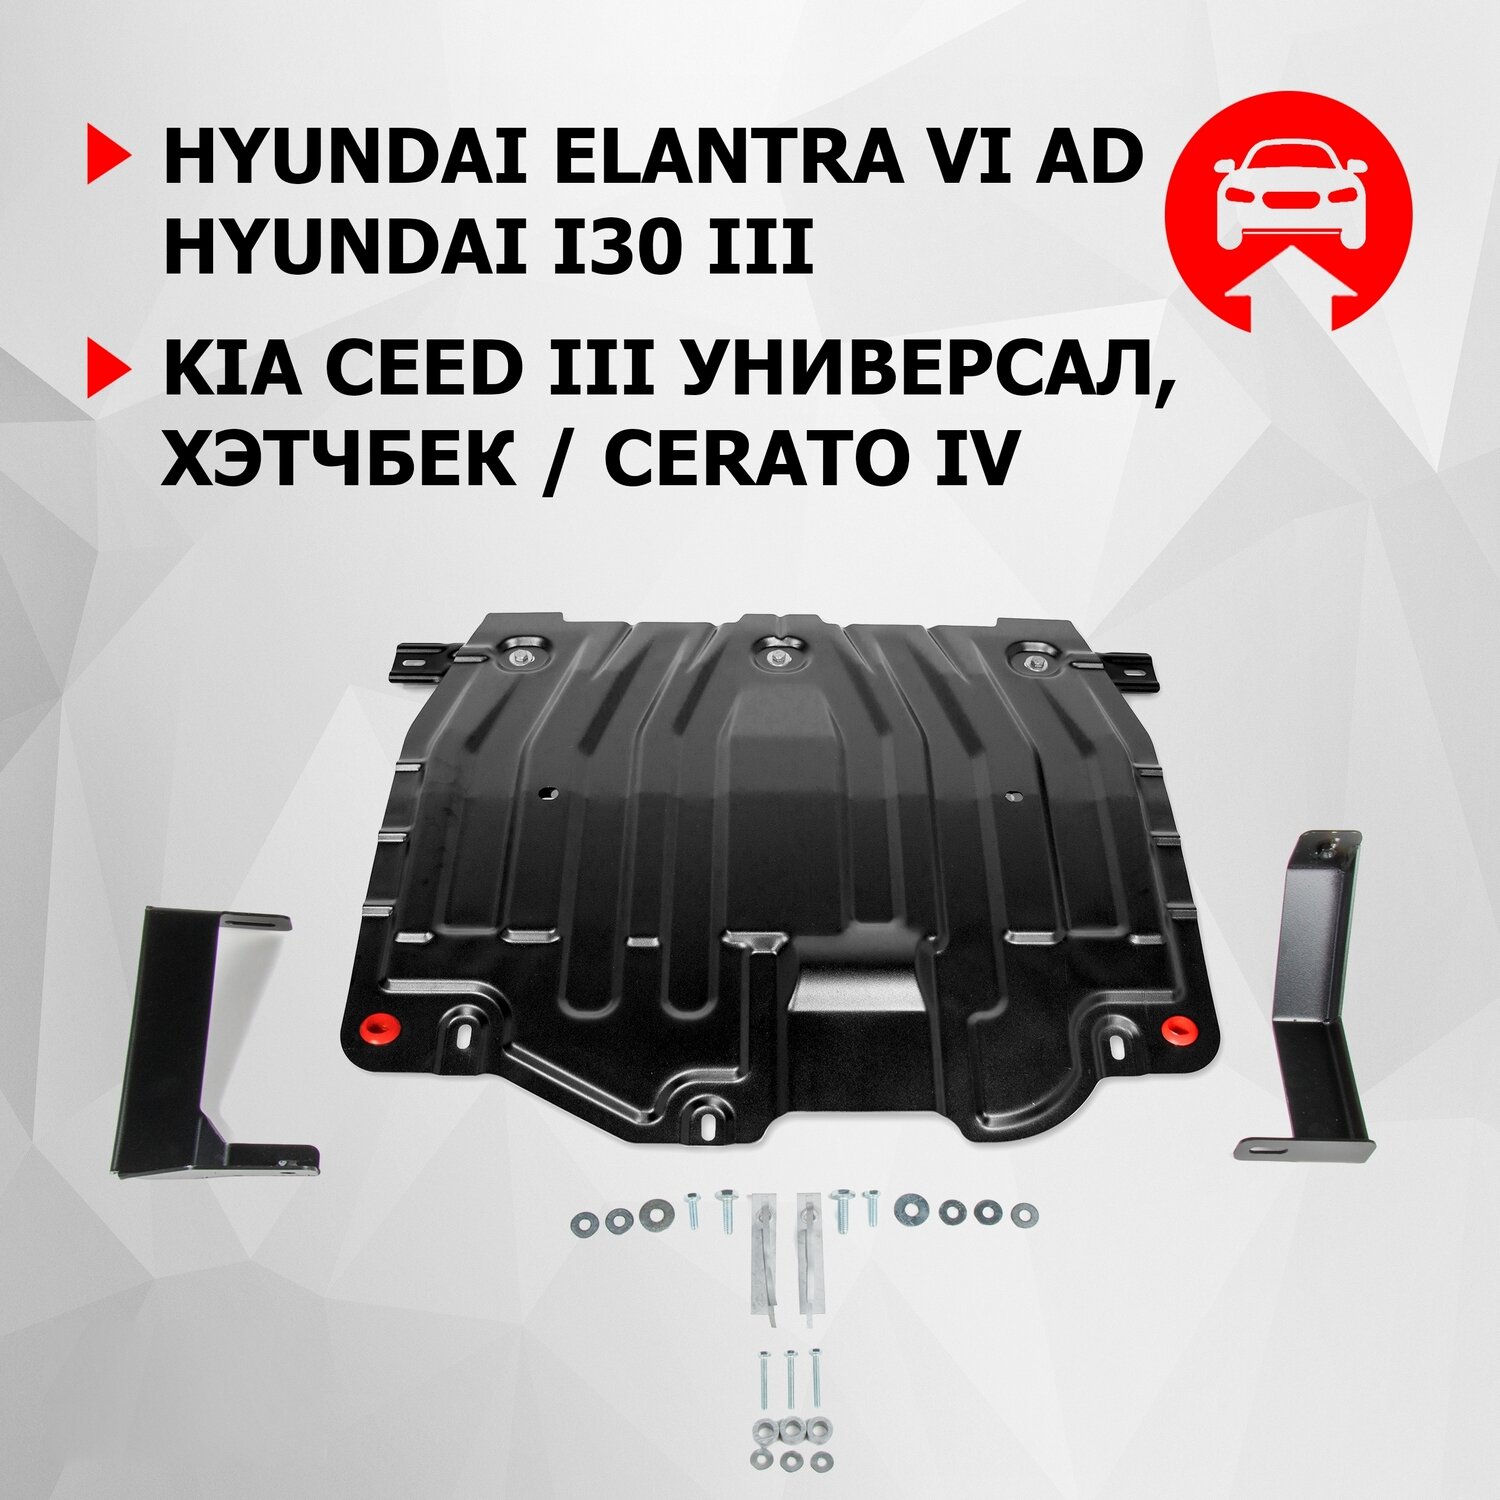 ЗК и КПП АвтоБроня Hyundai Elantra AD 2016-2020/i30 III 2017-2020/Kia Ceed III универсал хэтчбек 2018-/Cerato IV 2018-2021 сталь 15 111023743